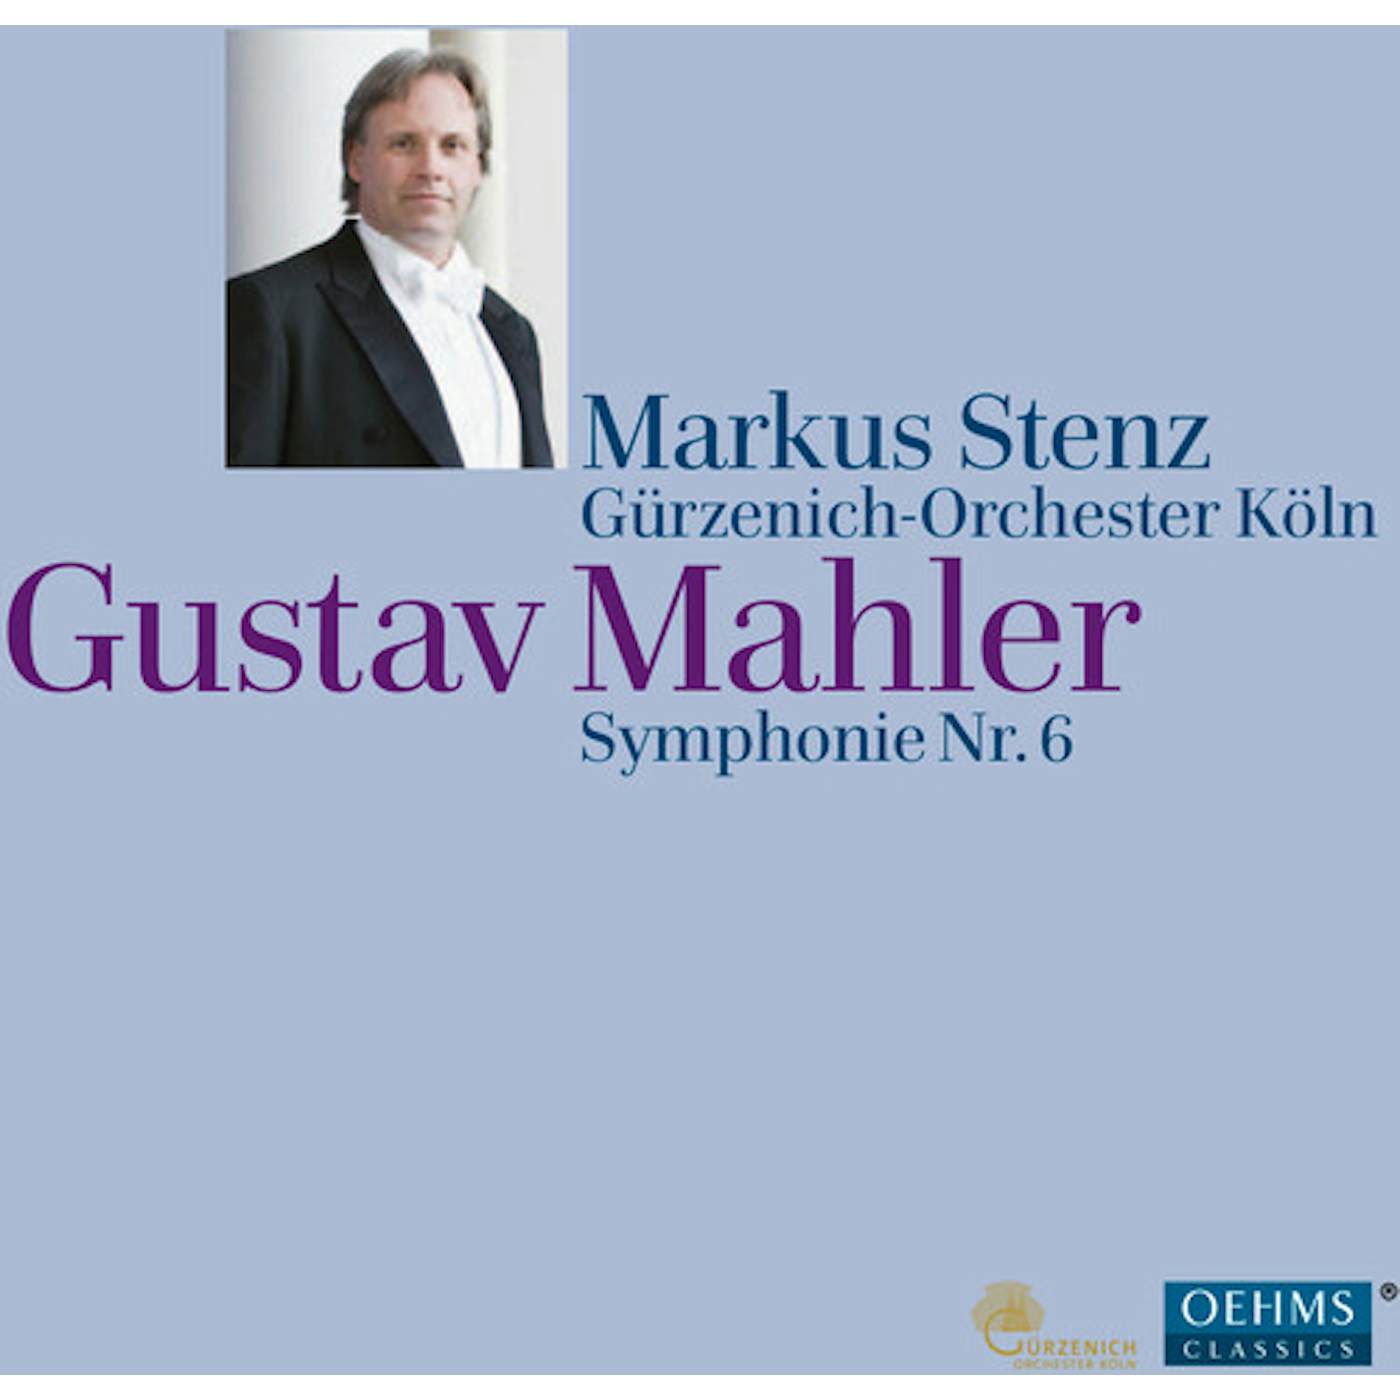 Gustav Mahler SYM 6 CD